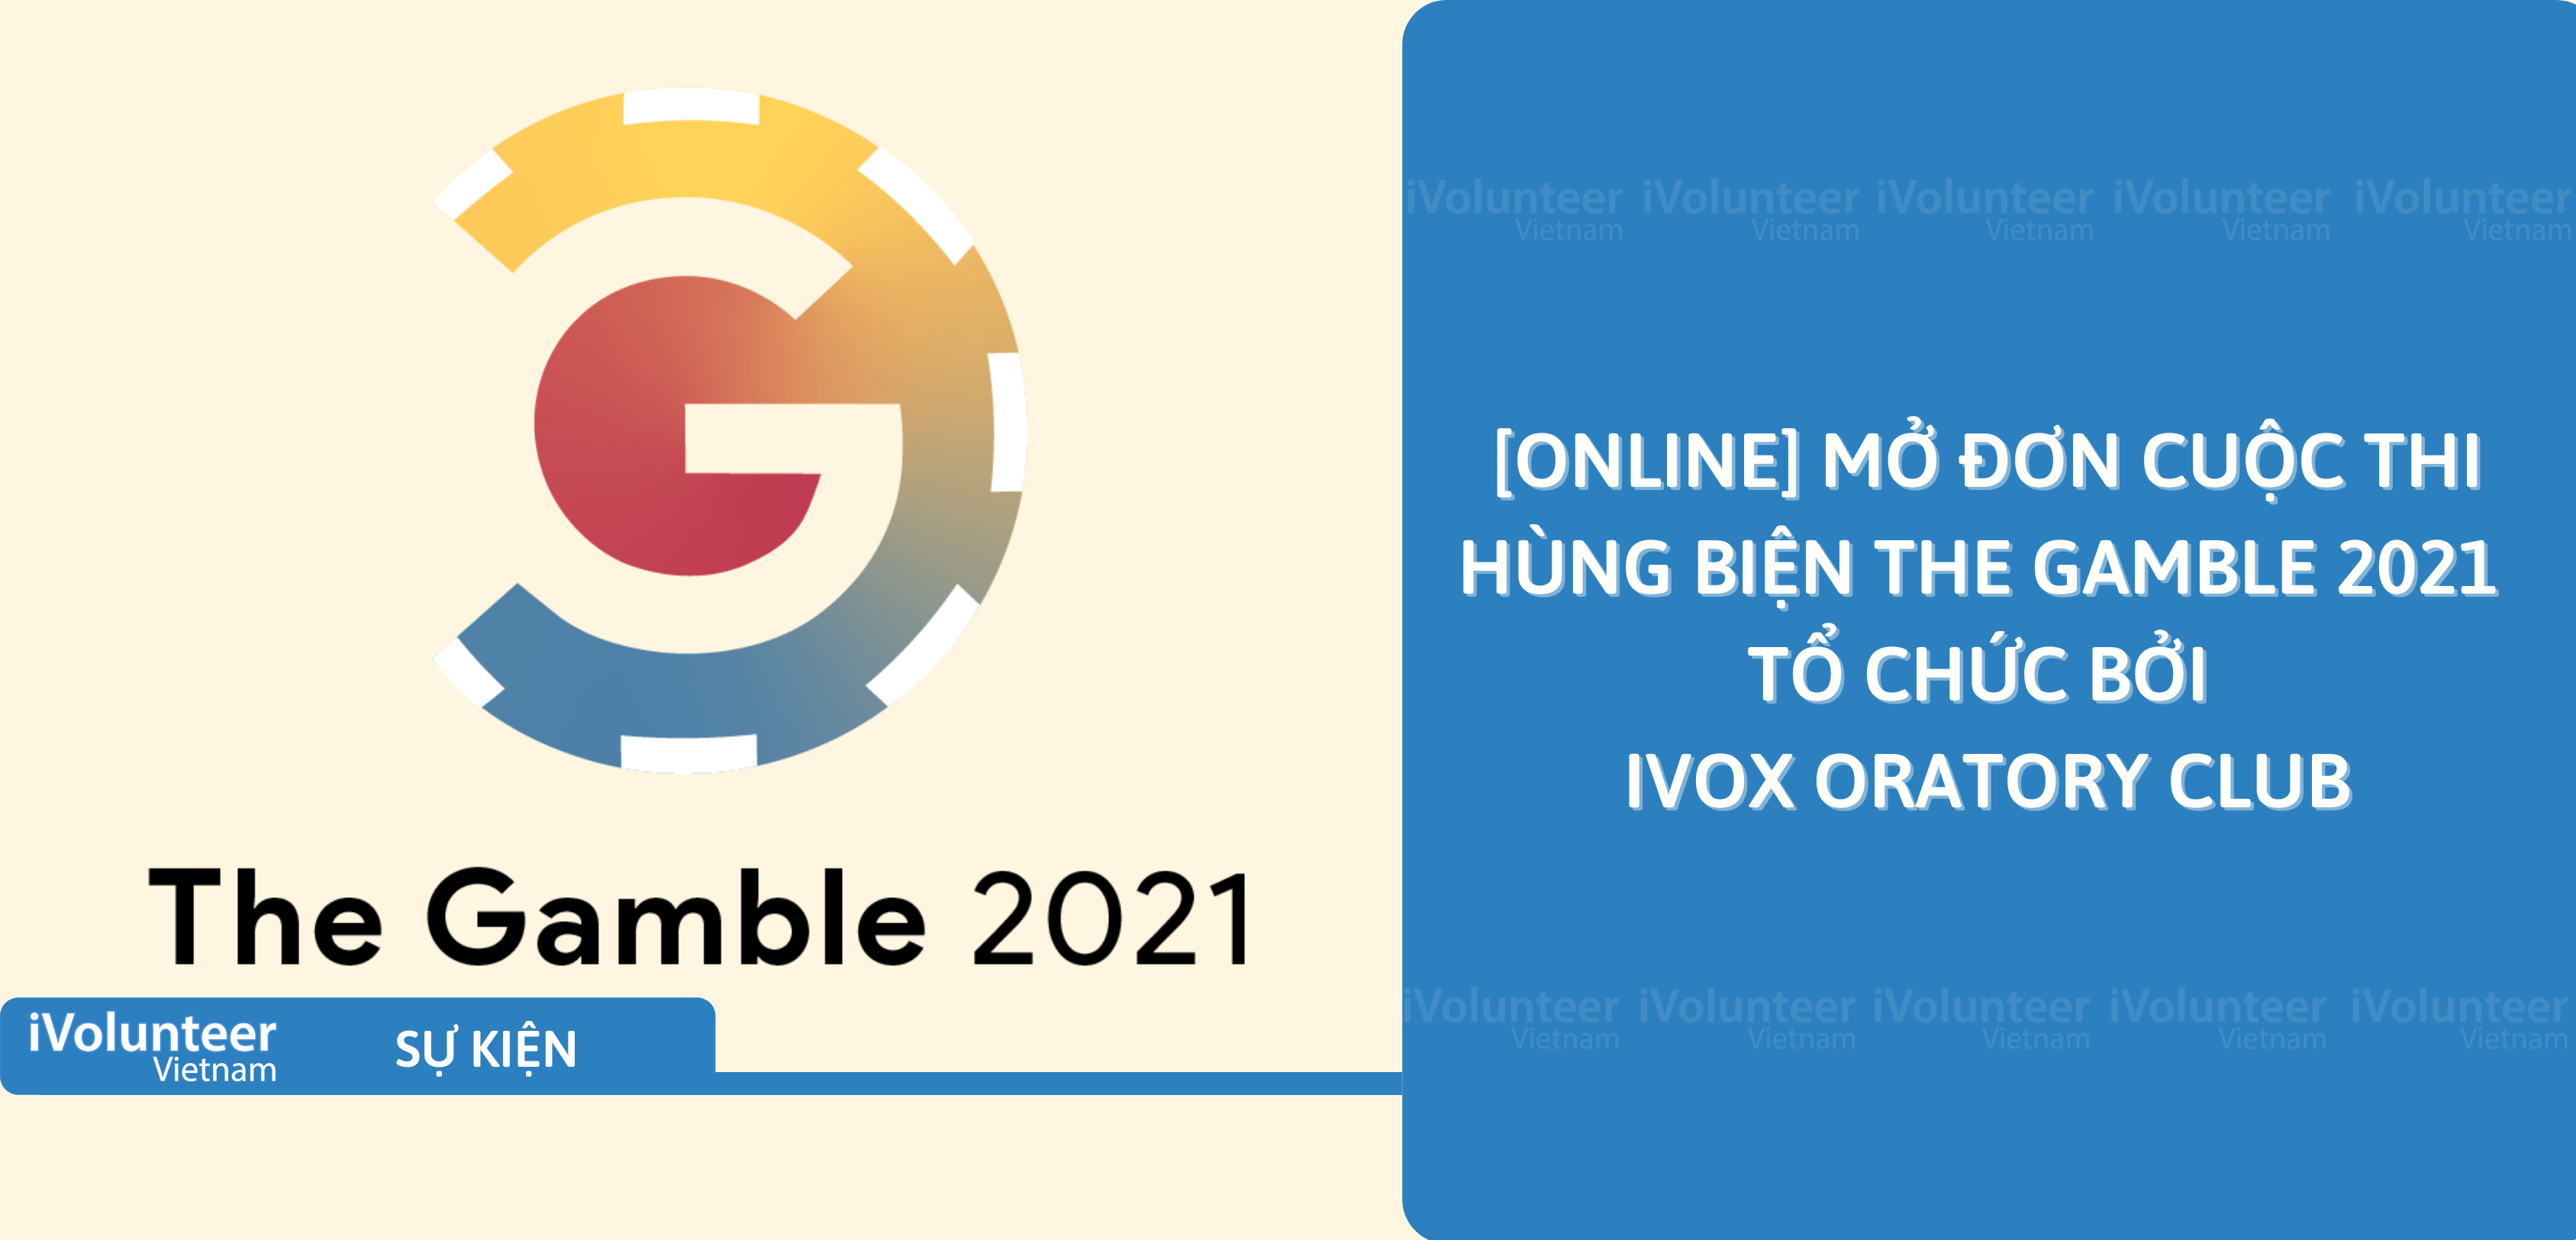 [Online] Mở Đơn Cuộc Thi Hùng Biện The Gamble 2021 Tổ Chức Bởi IVOX Oratory Club